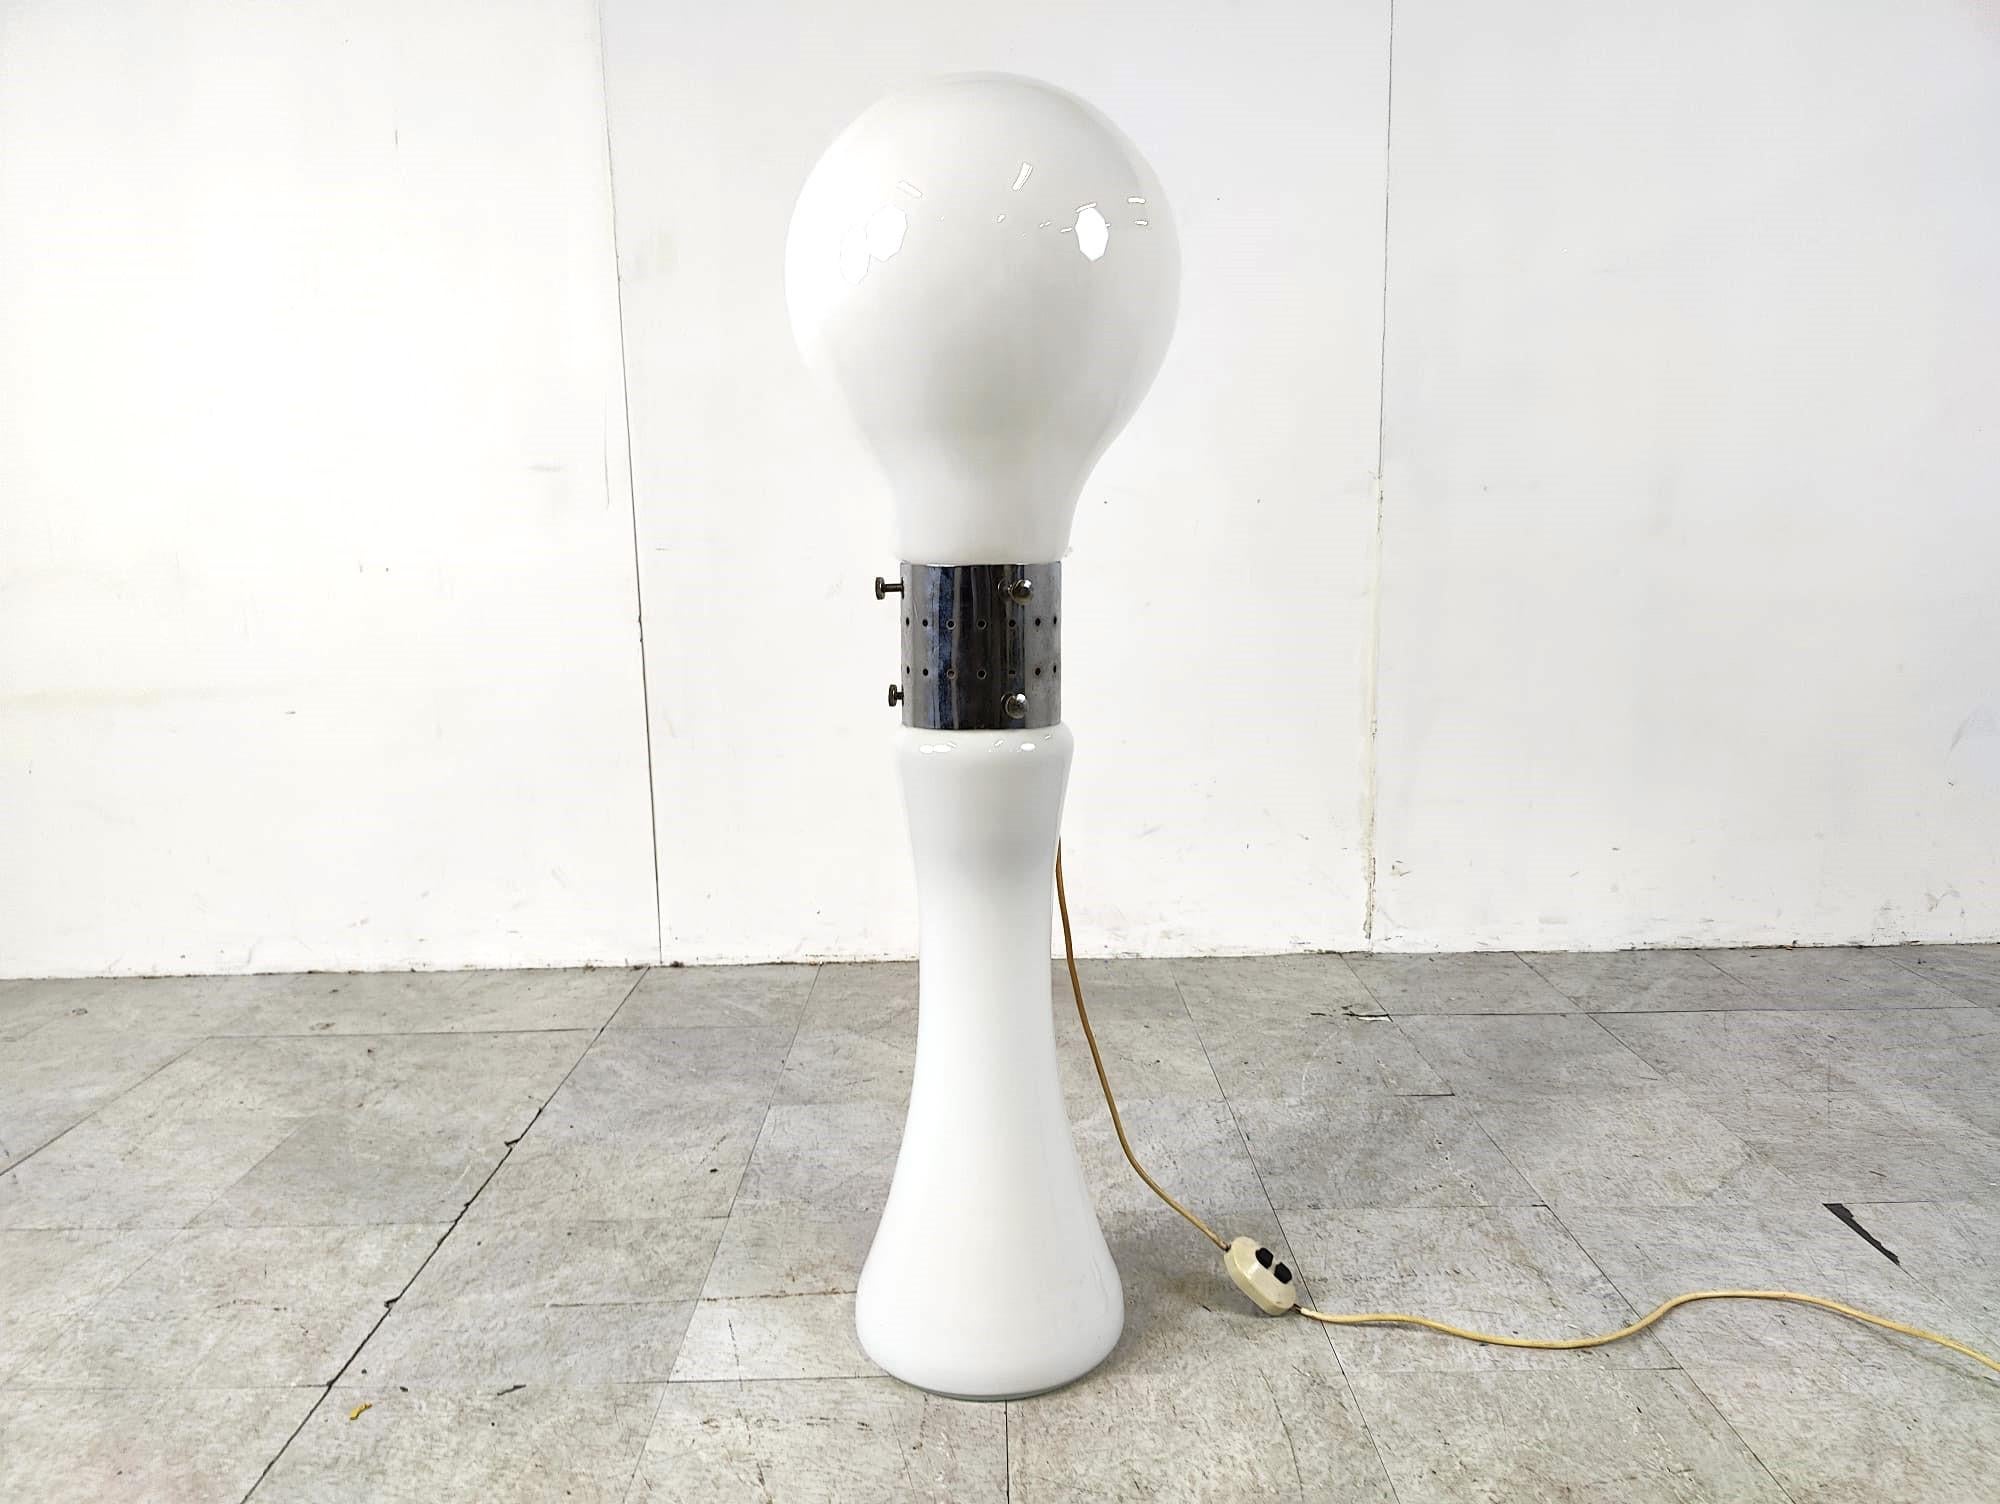 Zeitlose Stehleuchte Modell 'birillo', entworfen von Carlo Nason für AV Mazzega.

Schöne Stehlampe aus dem Weltraumzeitalter mit weißem, glaskolbenförmigem Schirm. Die gesamte Leuchte ist aus Murano-Glas mit verchromten Mittelstücken gefertigt.

Die